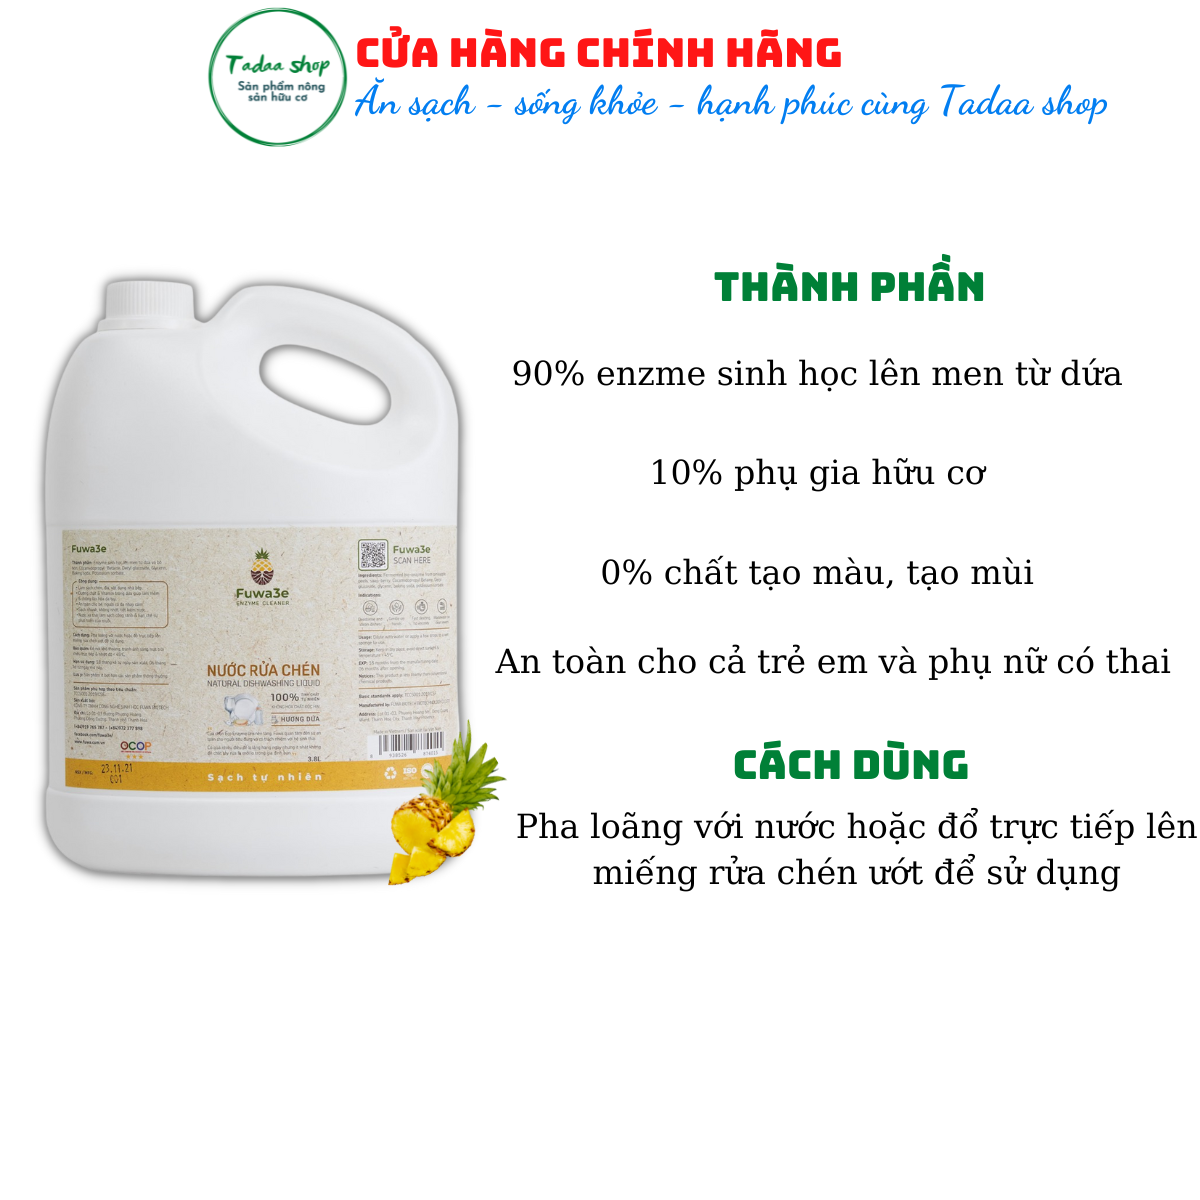 Nước rửa chén hữu cơ hương dứa Fuwa3e an toàn cho da trẻ em can tiết kiệm 3,8L